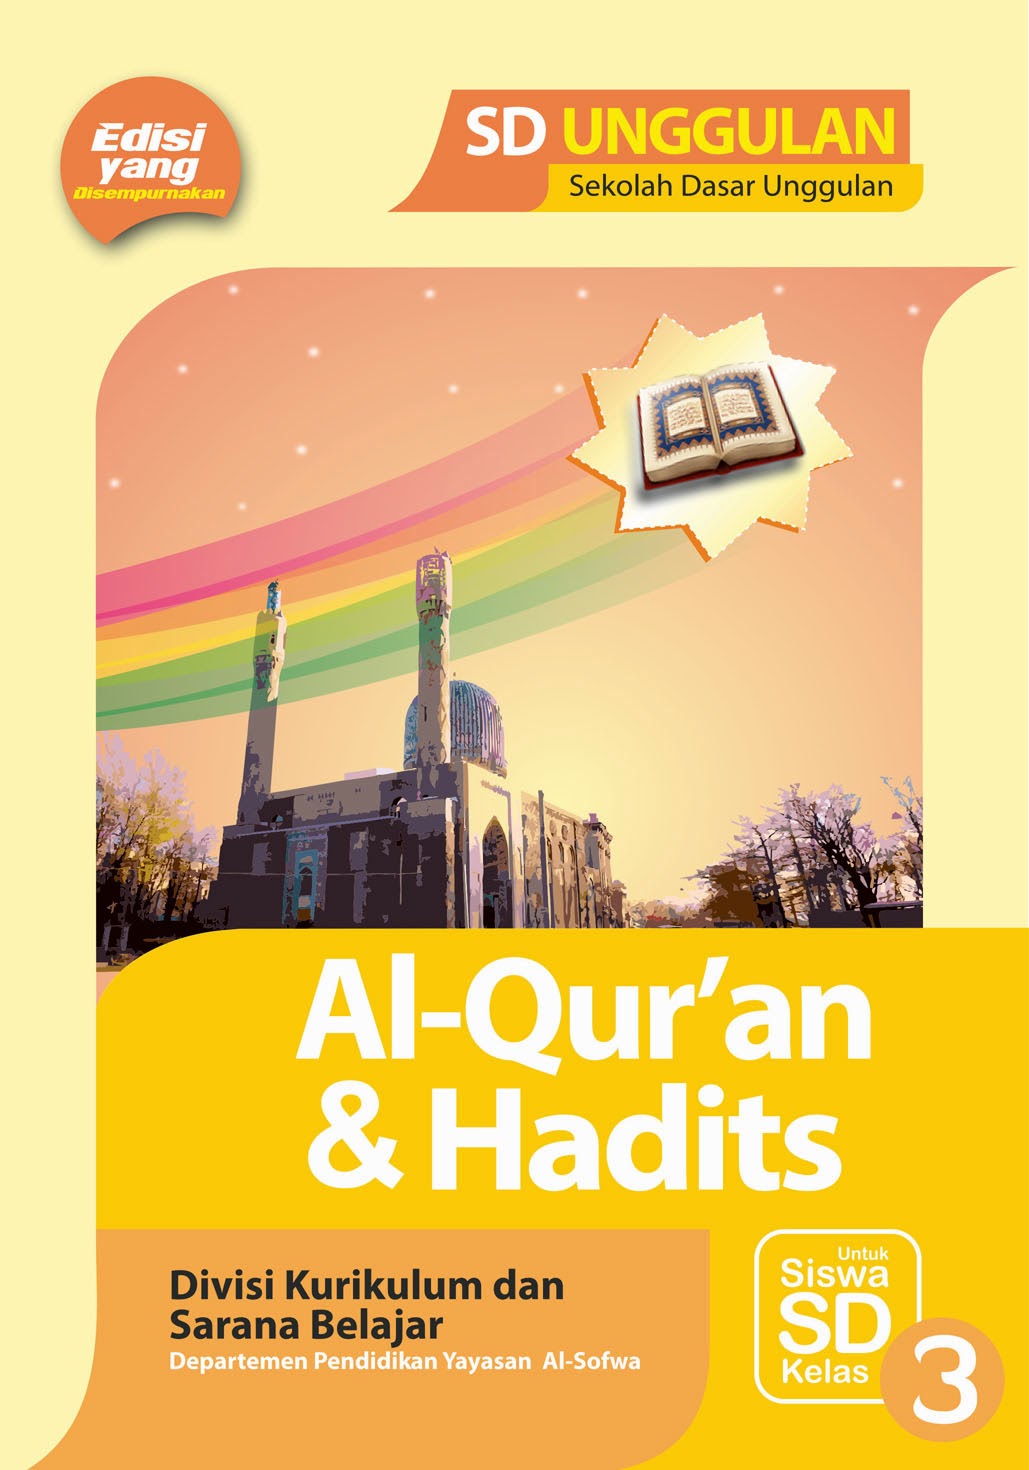 Soal Latihan Quran Hadits Kelas 3 Mi